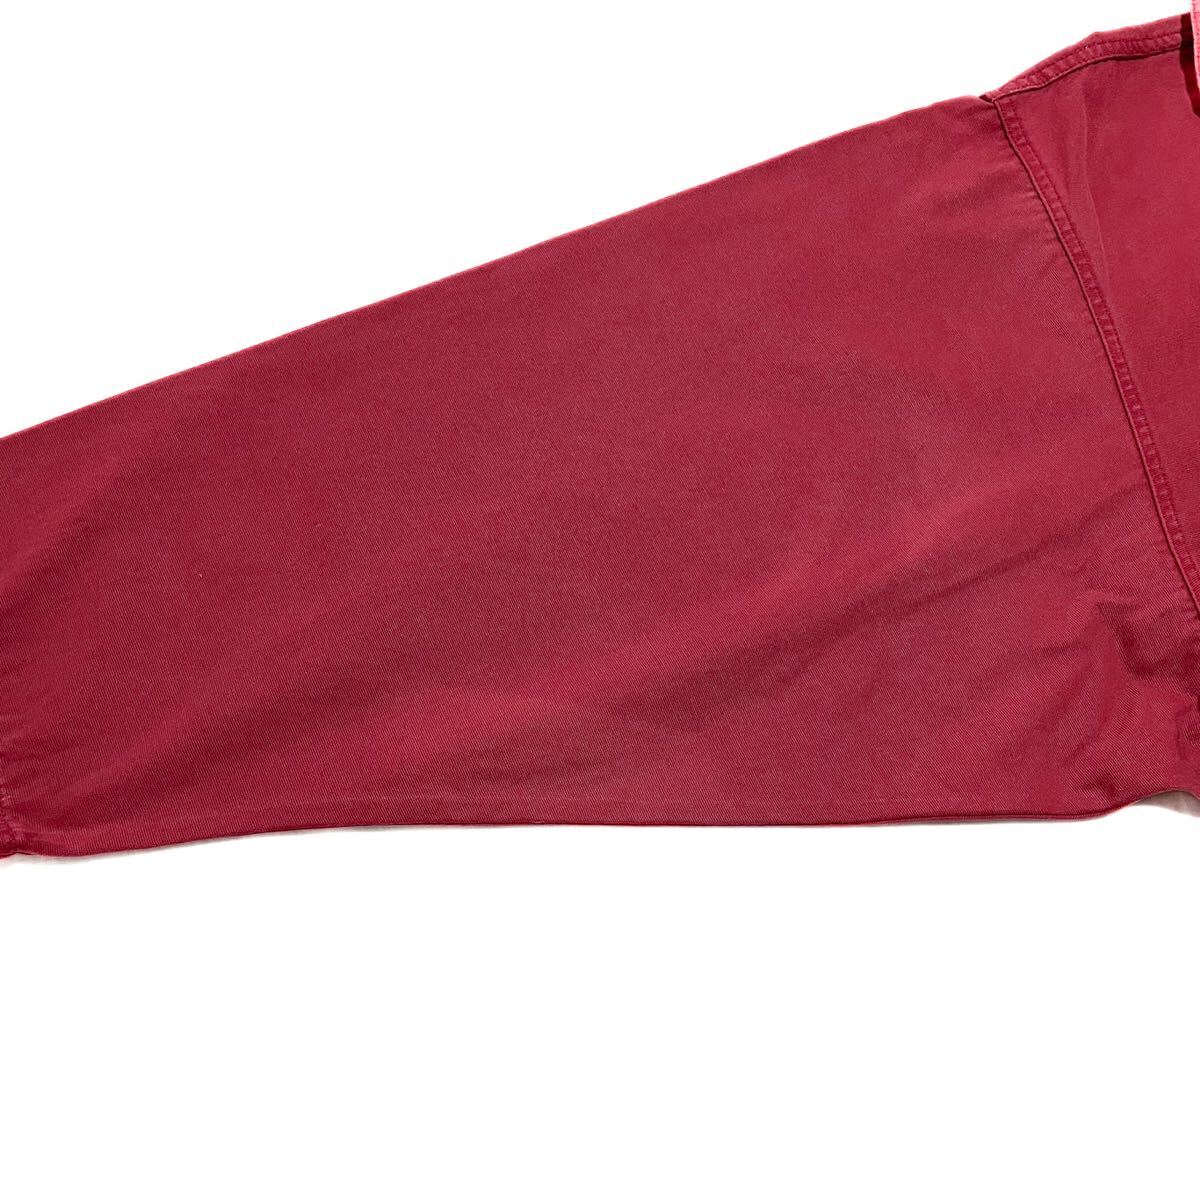 良品 フランス ヴィンテージ フィッシャーマン スモックジャケット 大きいサイズ シャツ フレンチワーク ワークジャケット_画像4